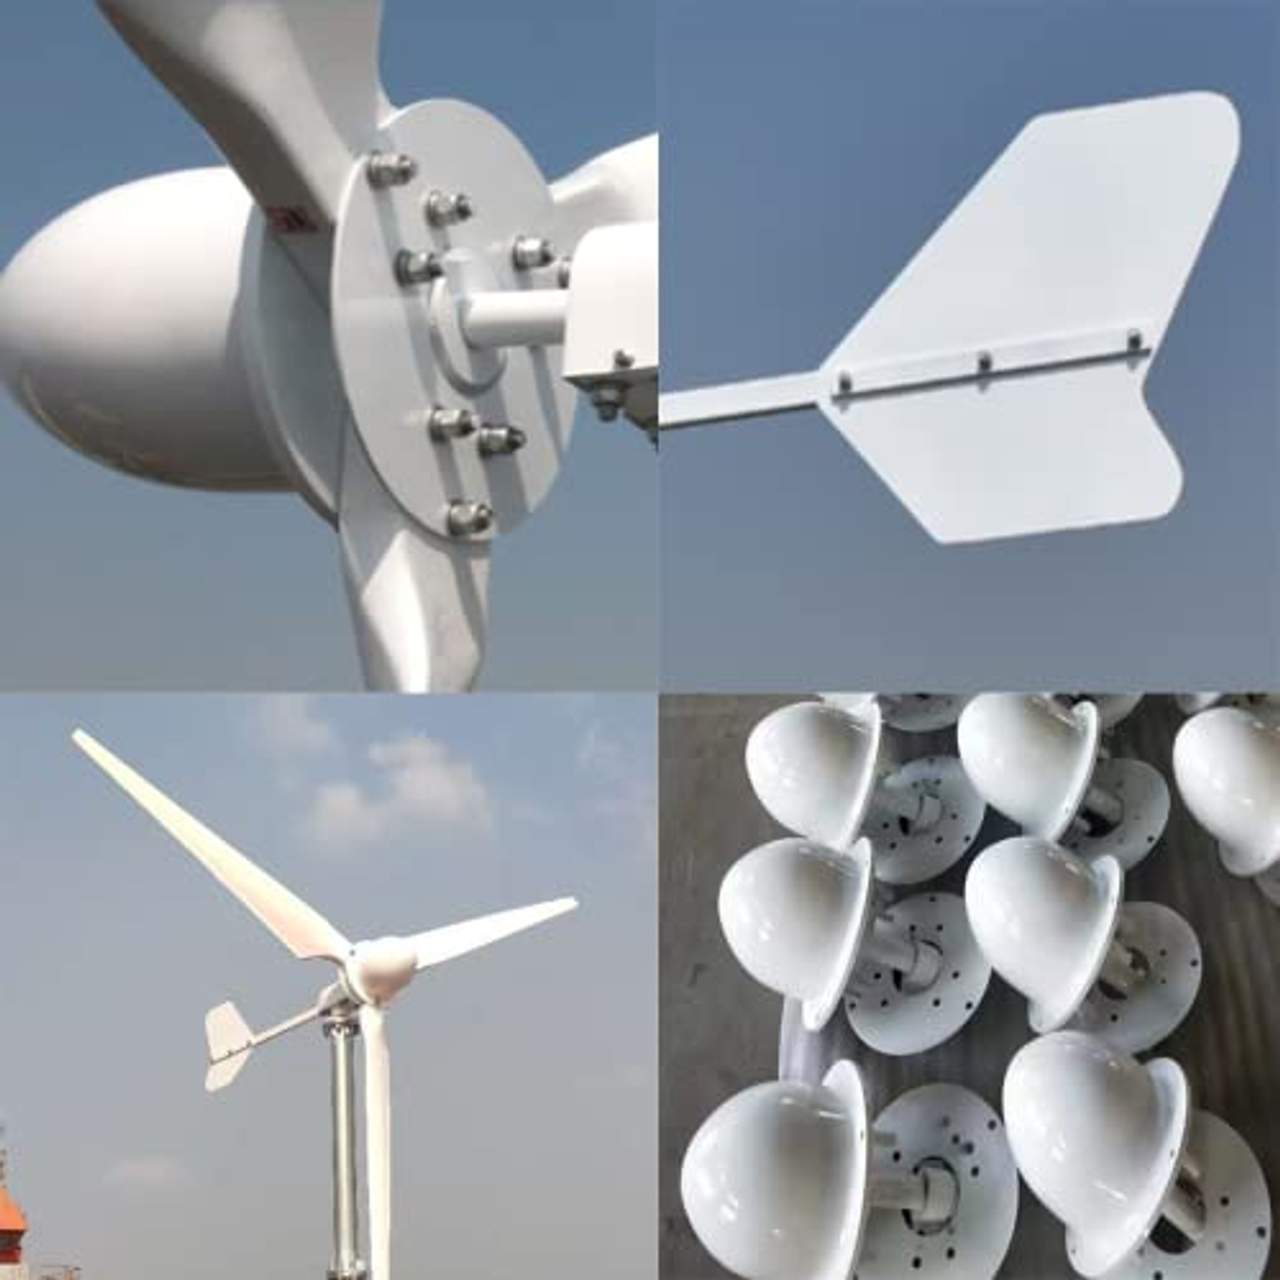 5000W Windkraftanlage Kits  96V Netzkopplung System